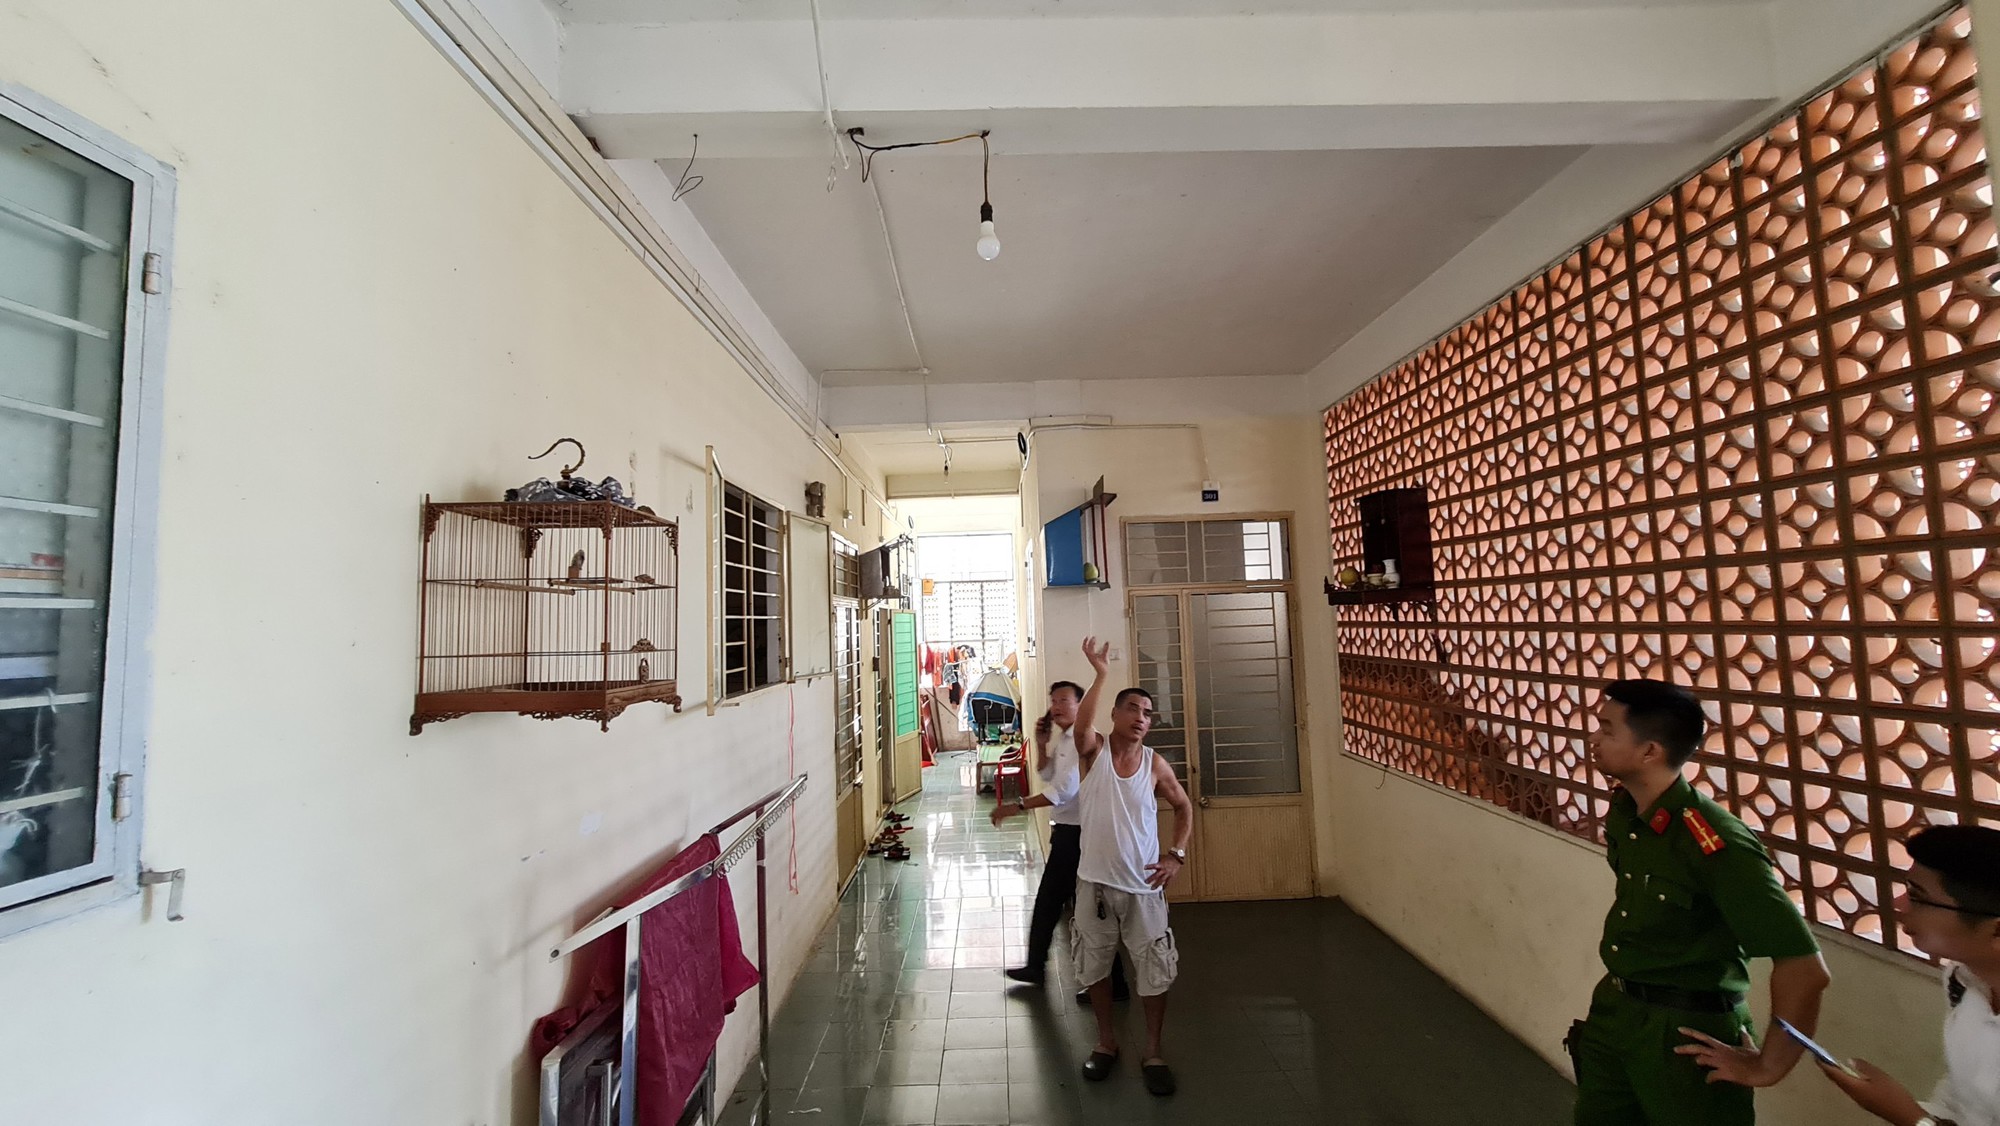 Kiểm tra PCCC của hàng ngàn chung cư, nhà trọ tại Đà Nẵng - Ảnh 5.